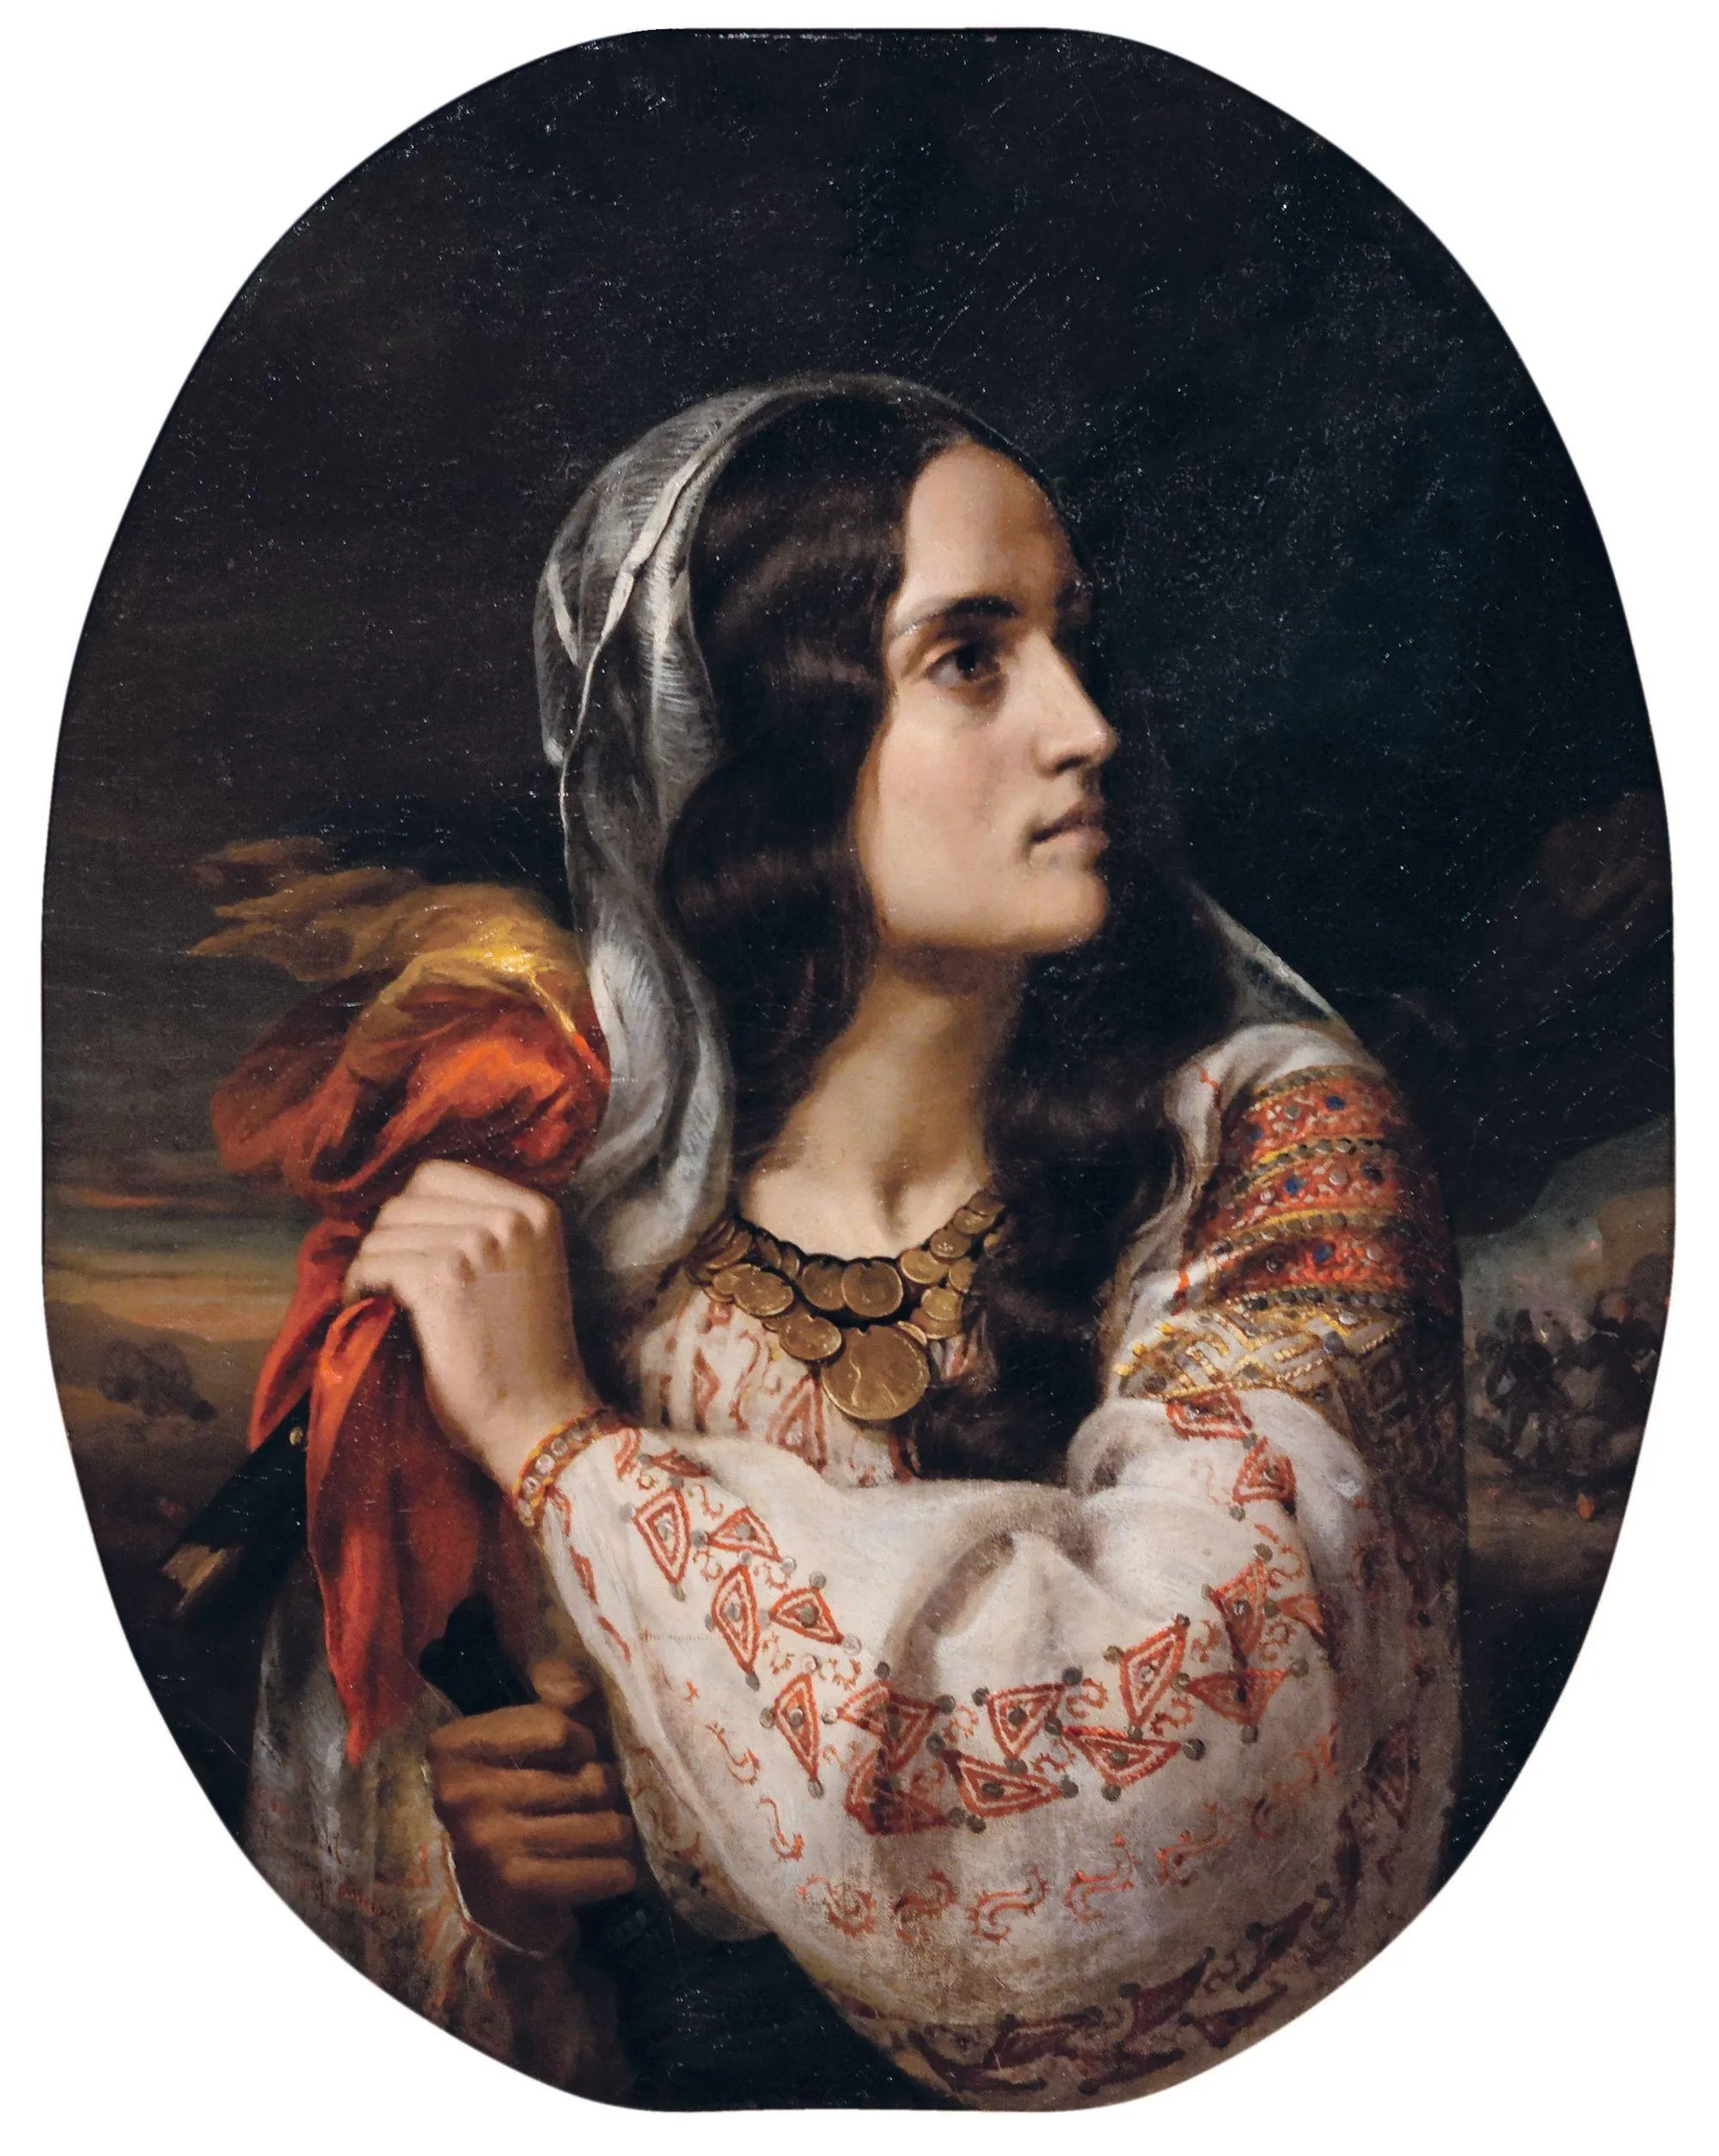 Constantin Daniel Rosenthal, Allégorie de la Roumanie, 1848, huile sur toile, 78,5 x 63,5 cm, musée national d'Art de Roumanie, Bucarest.